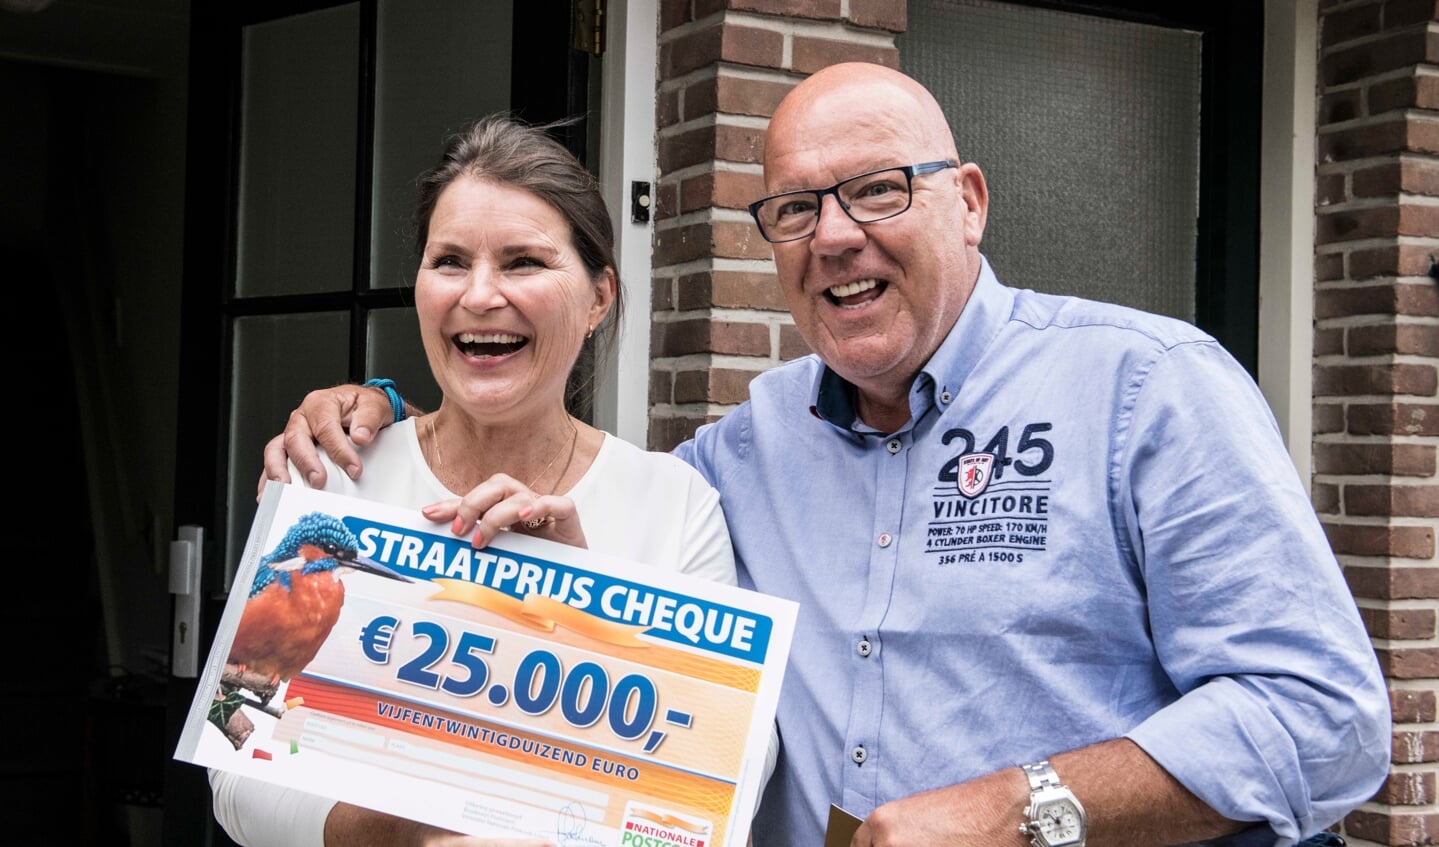 Nicoline uit Oegstgeest wordt verrast door Postcode Loterij-ambassadeur Gaston Starreveld met de PostcodeStraatprijs-cheque. | Foto Jurgen Jacob Lodder 